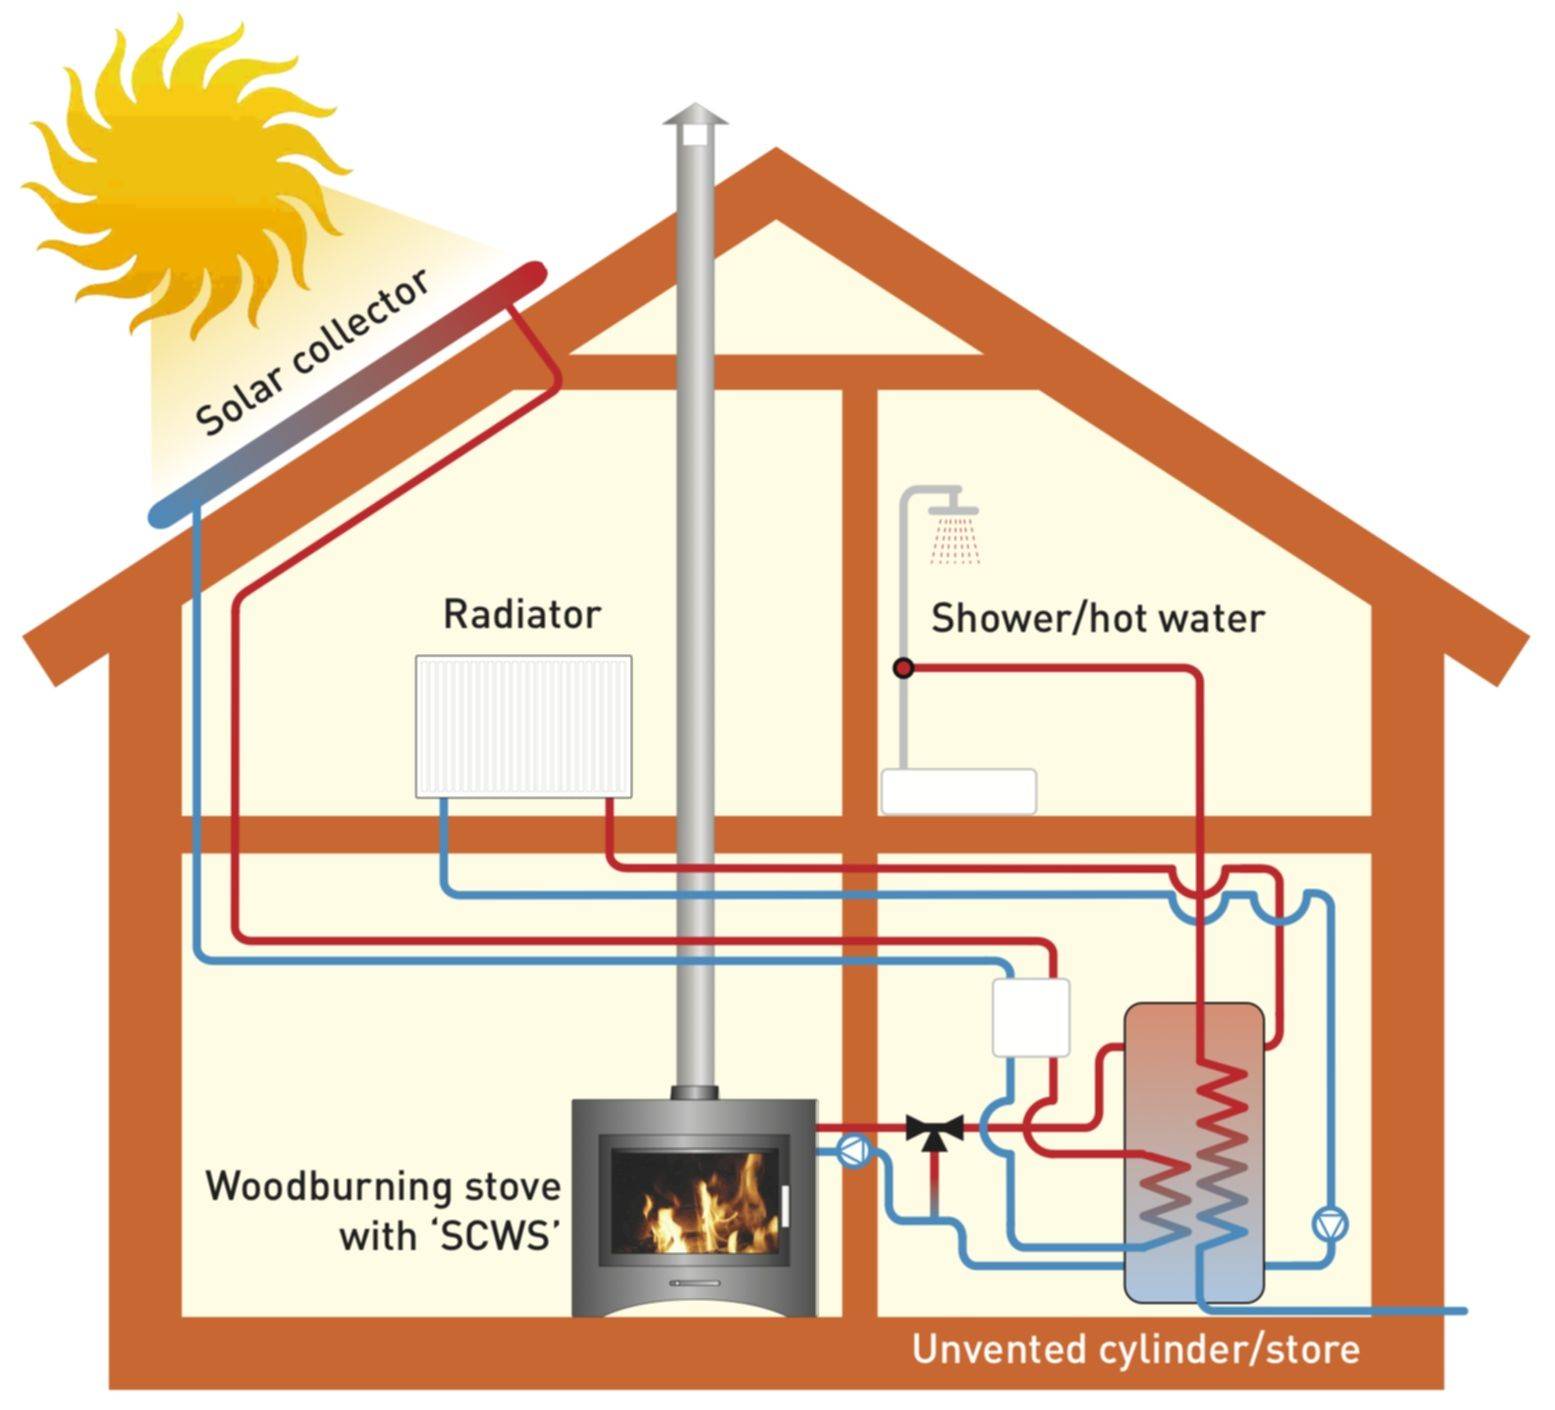 Отопление без газа: альтернатива газовому отоплению в частном доме, как сделать тепло, чем лучше отапливать, экономные варианты, как обогреть дом